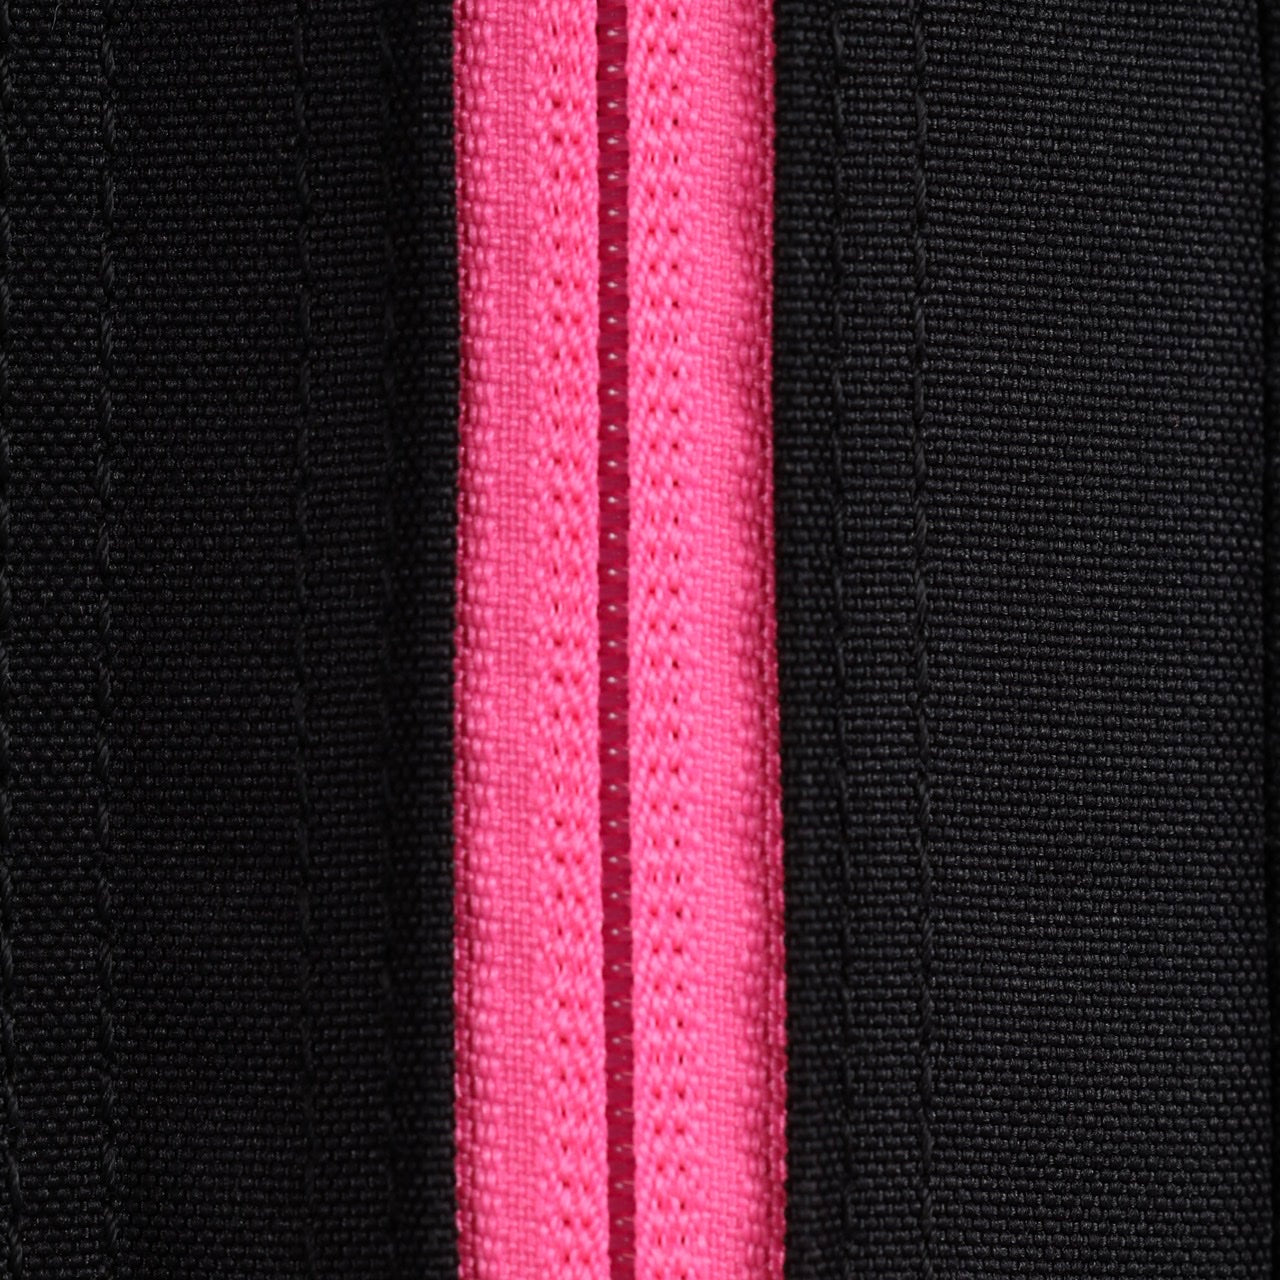 35L Backpack Black Neon Pink